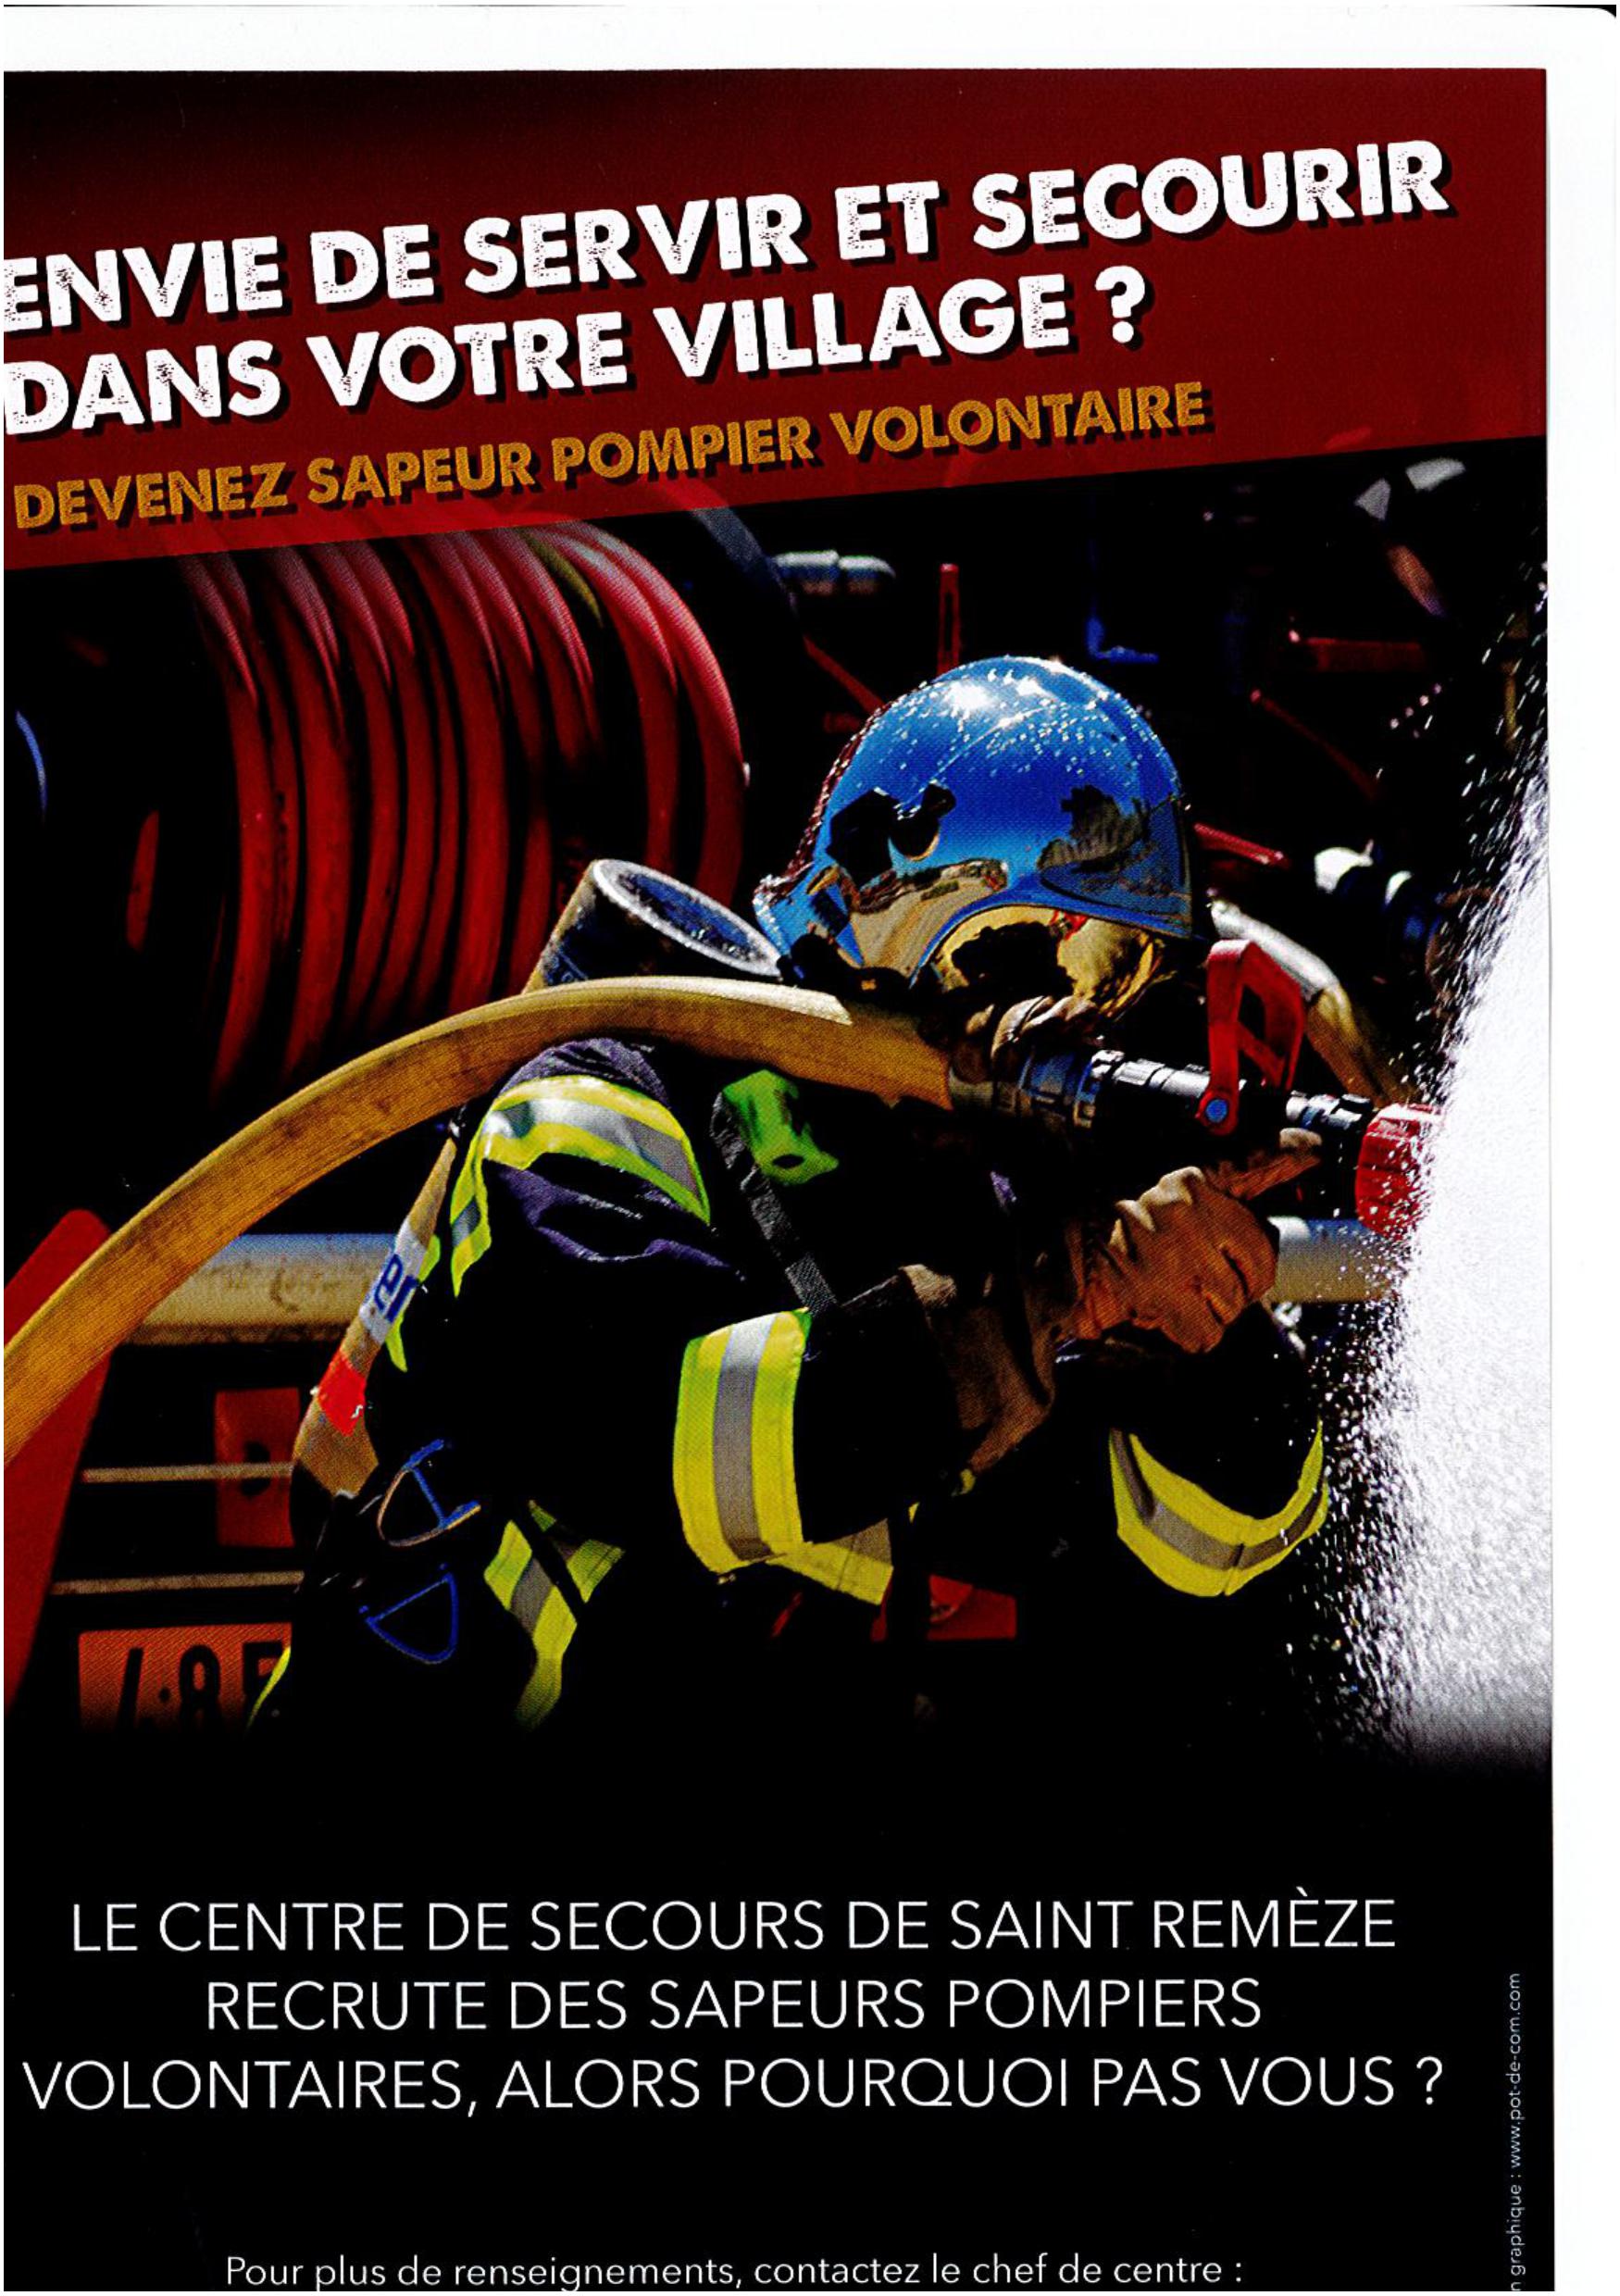 Devenez Sapeur Pompier Volontaire